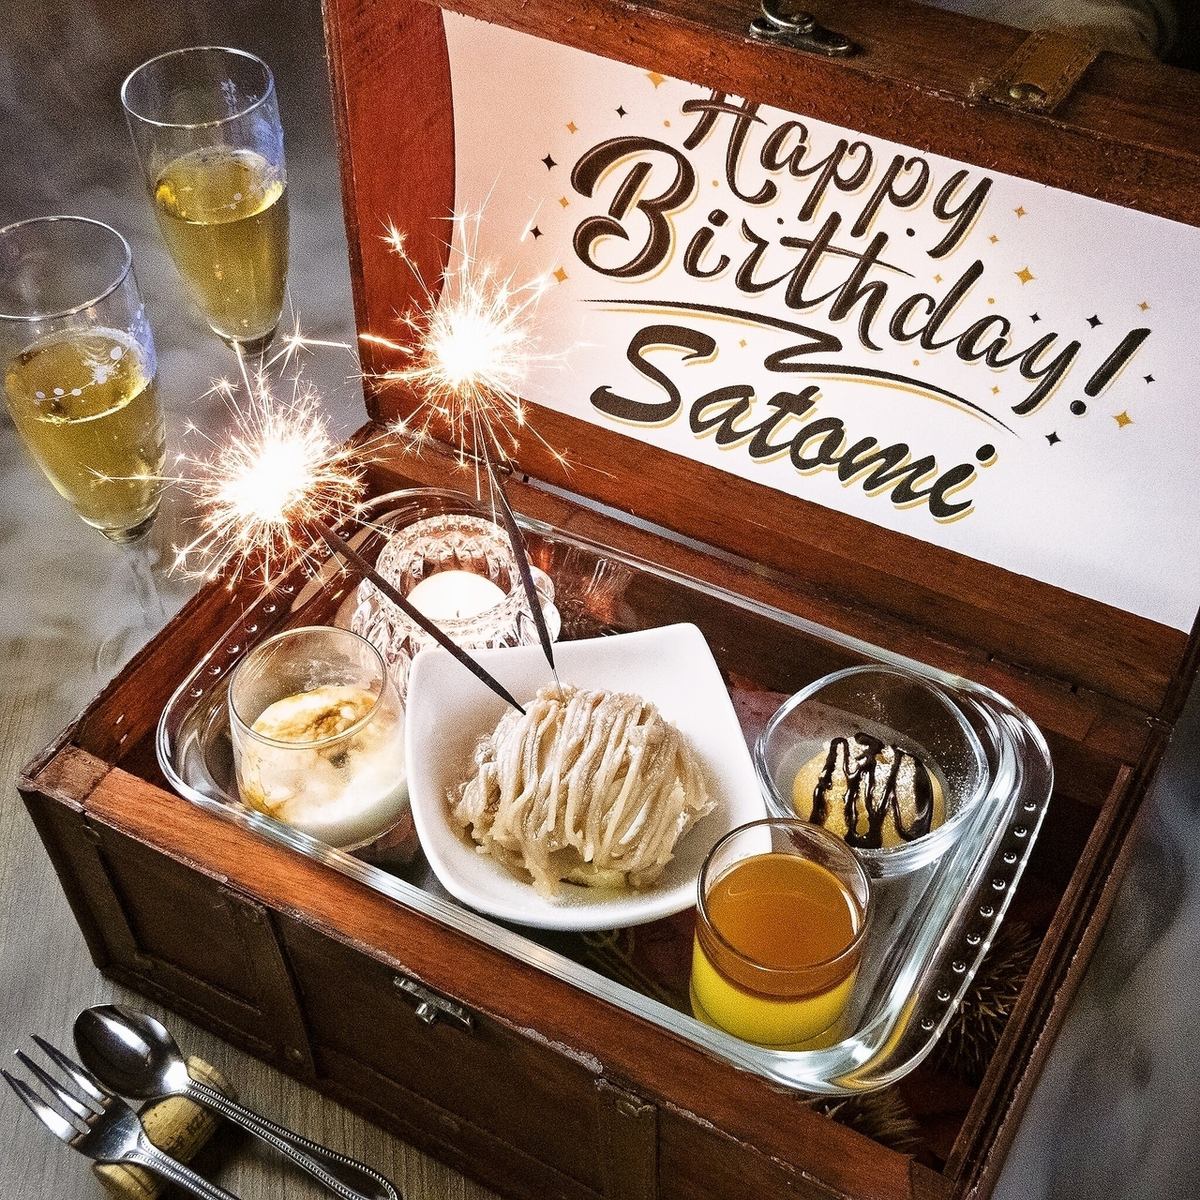 生日、紀念日◎還有附有留言的特別甜點盤♪